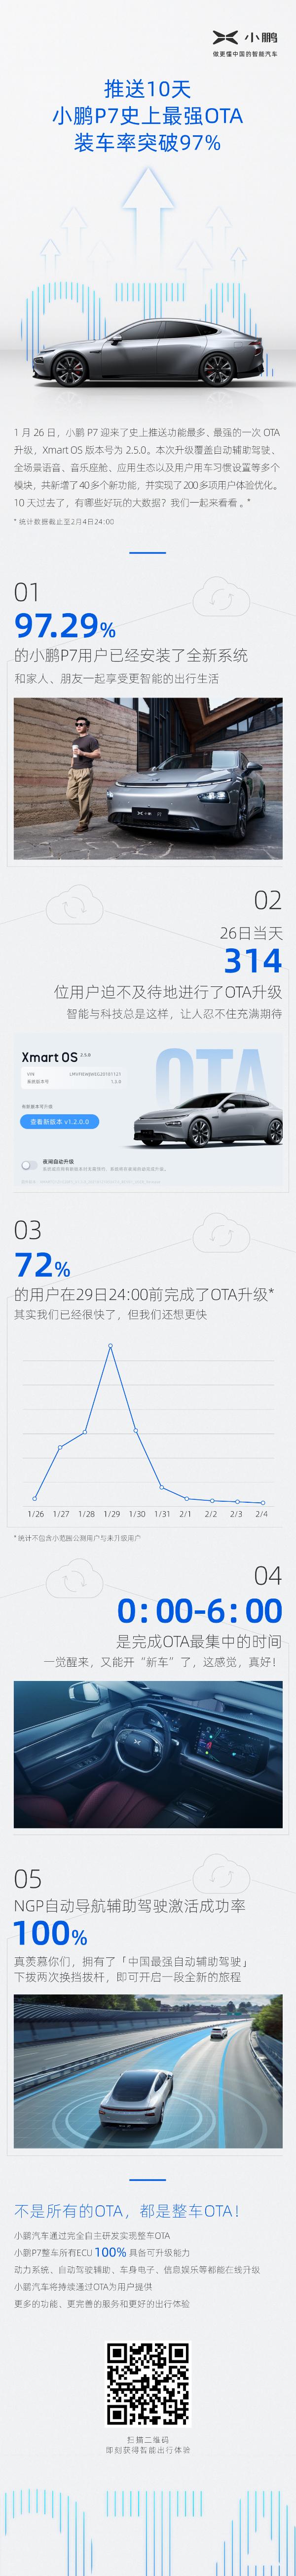 发布10天 小鹏P7最强OTA装车率突破97%